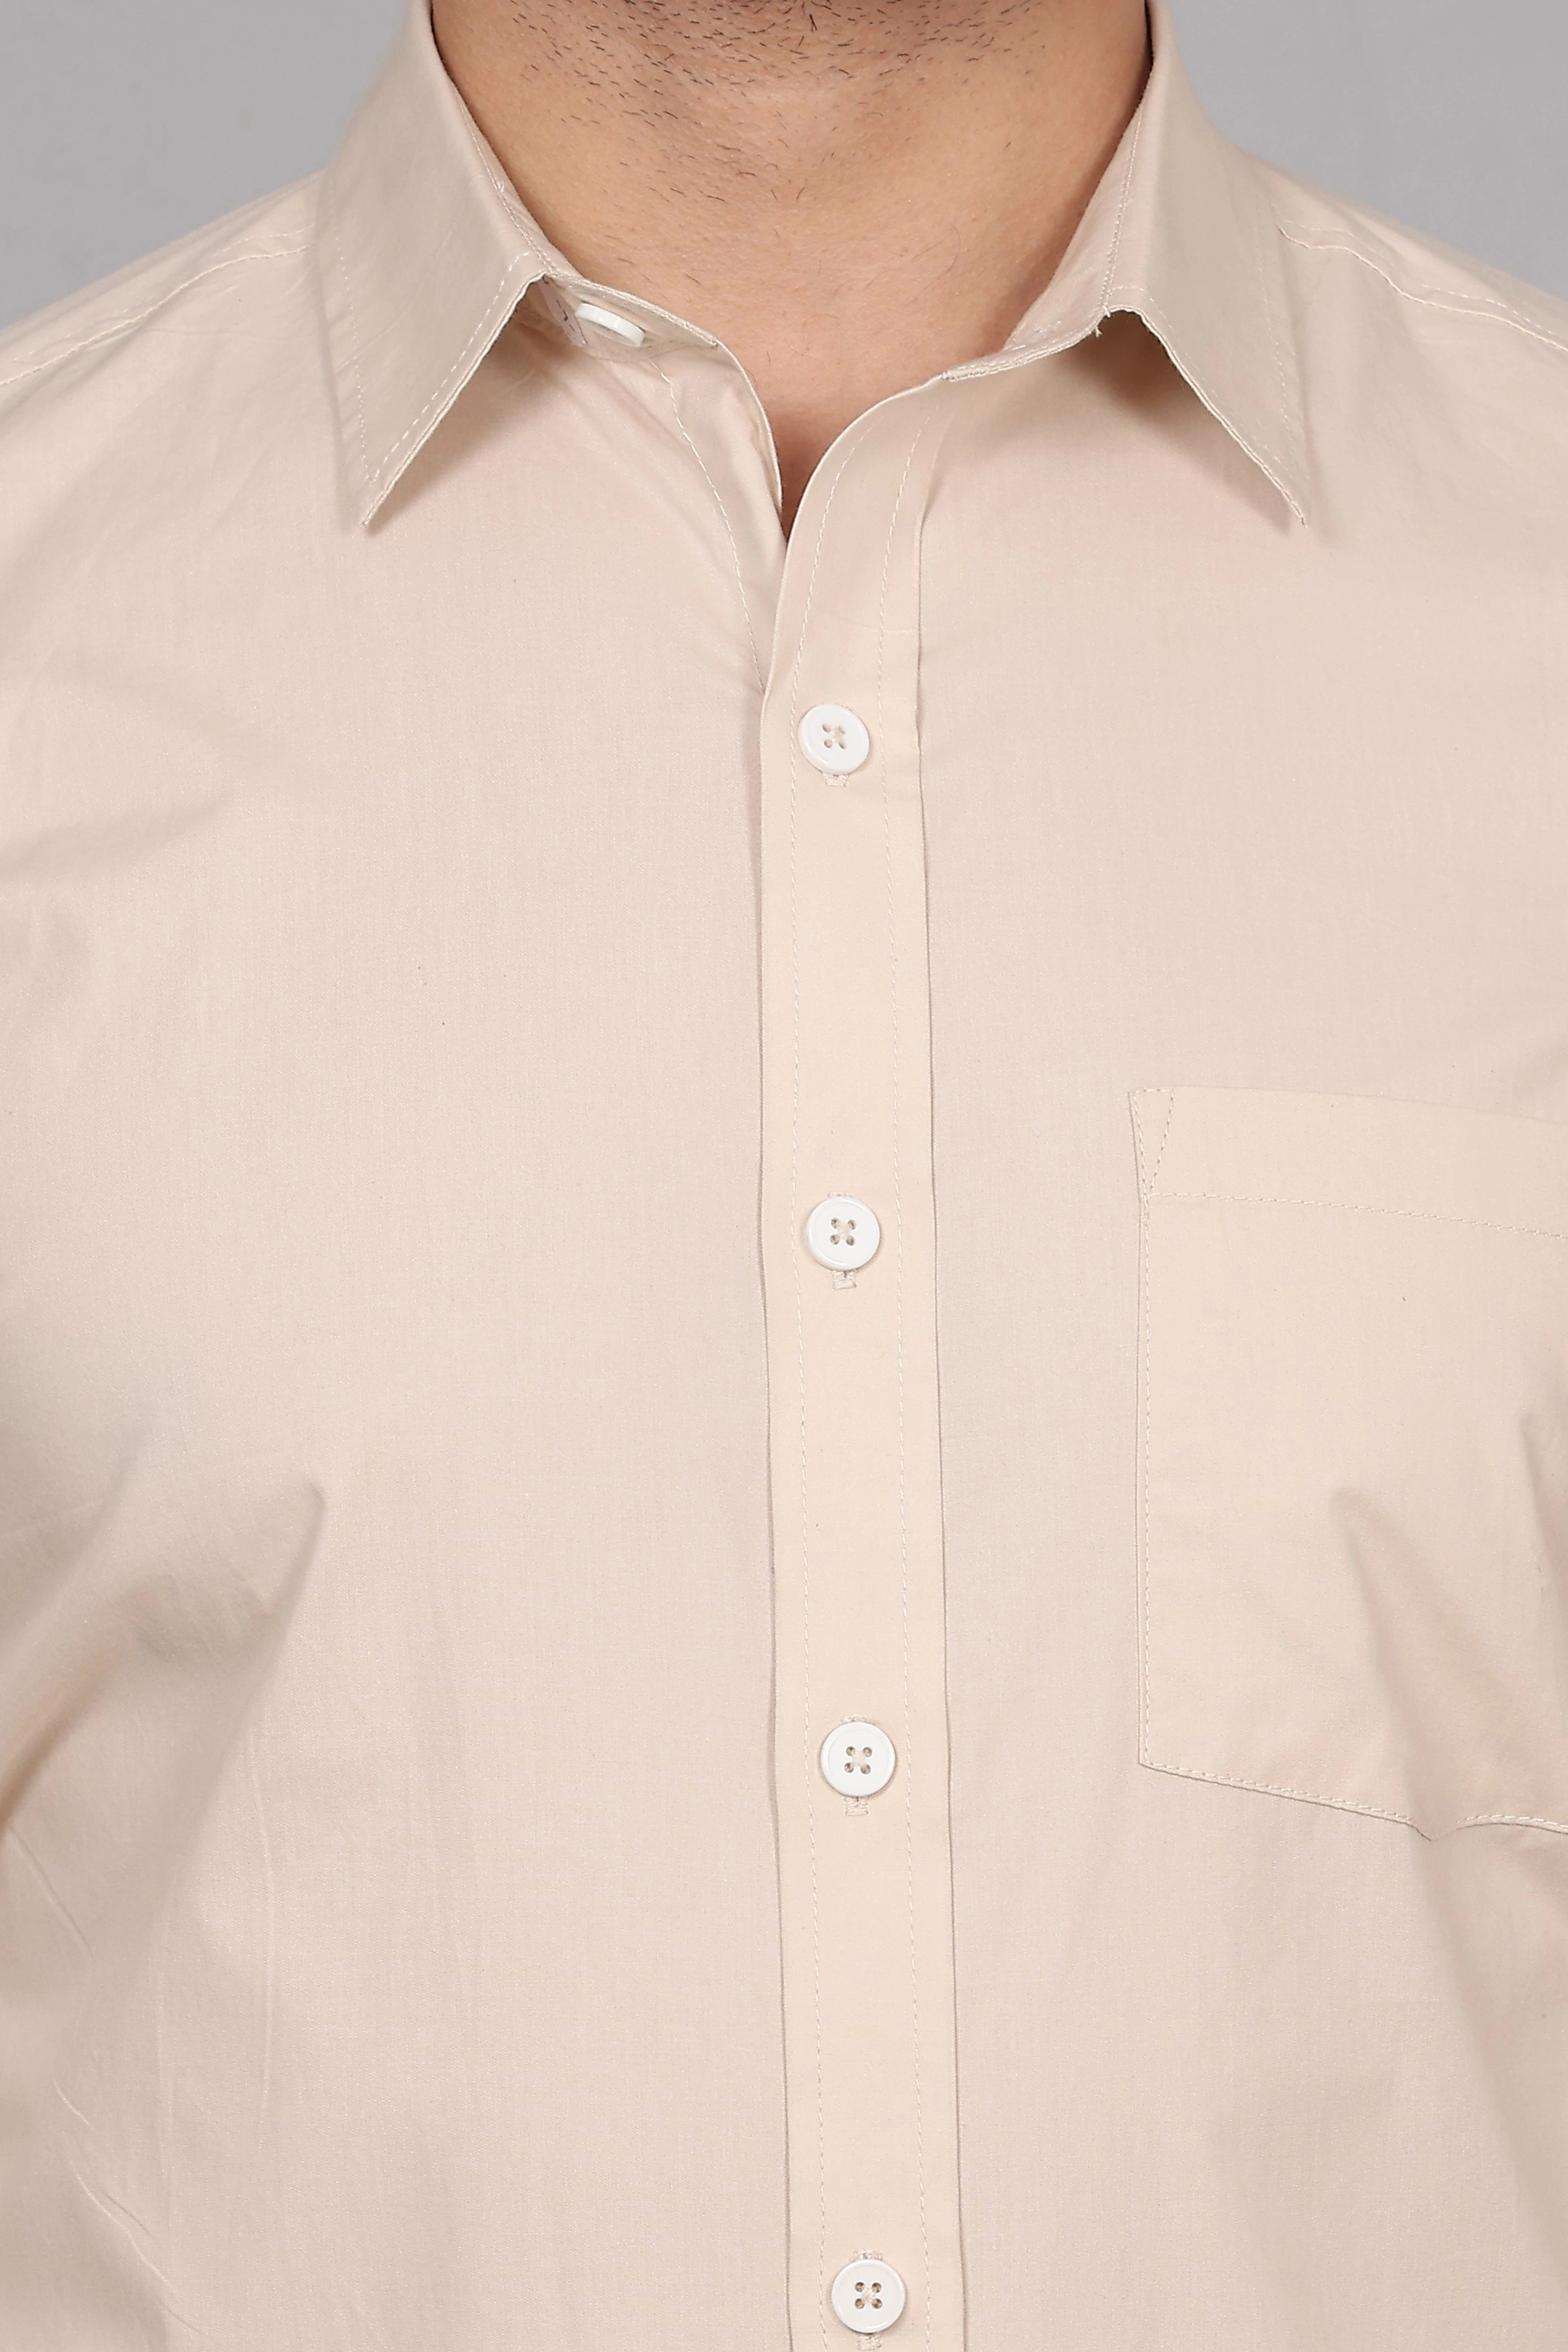 Beige Cream Formal Cotton Shirt-S-5